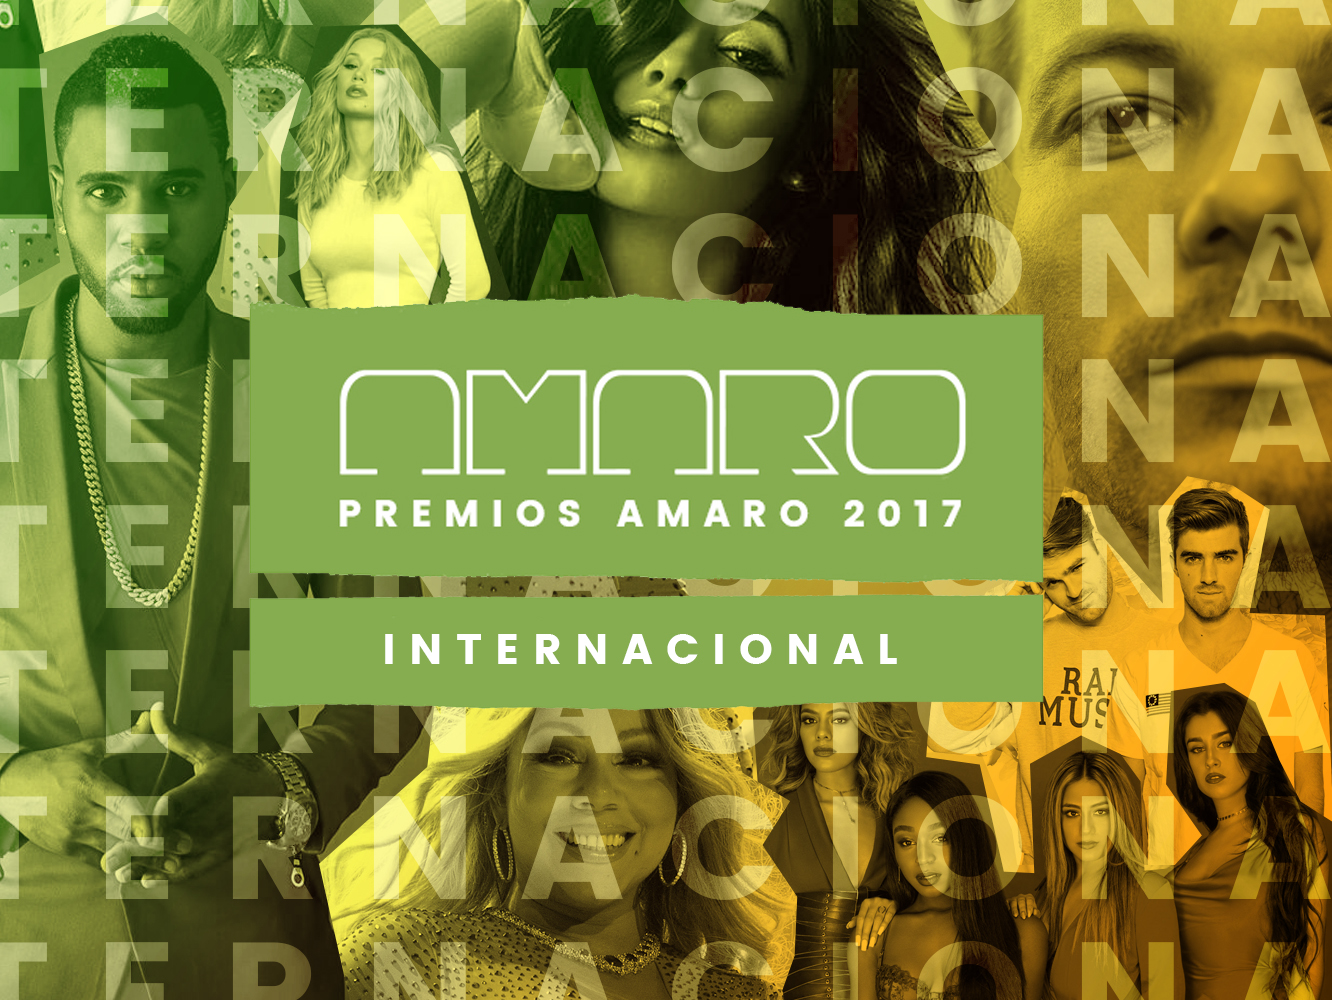  Premios Amaro 2017 | Los nominados en la categoría internacional